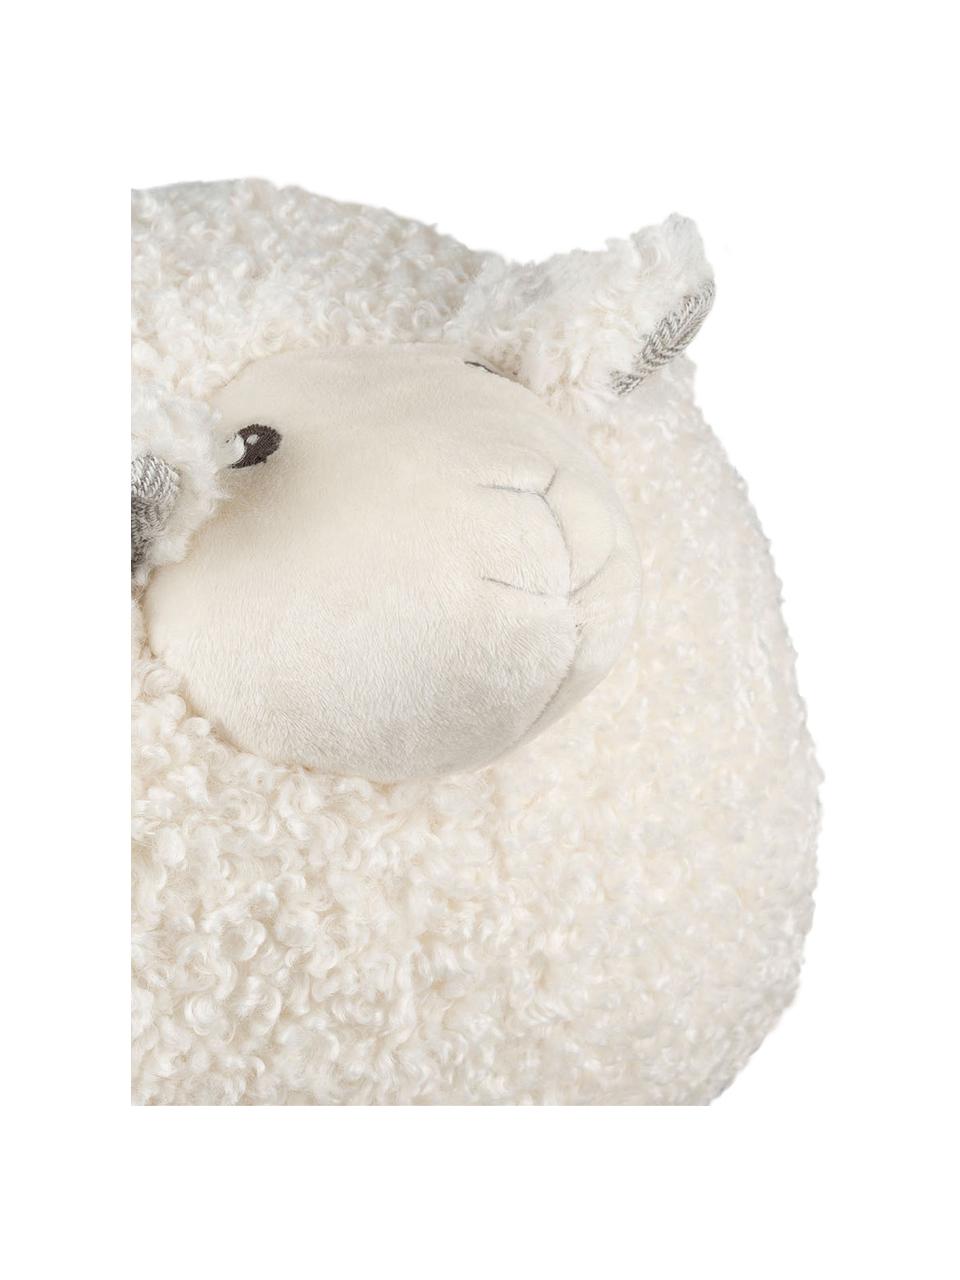 Achat peluche oreiller mouton blanc 30cm. Peluche personnalisée.